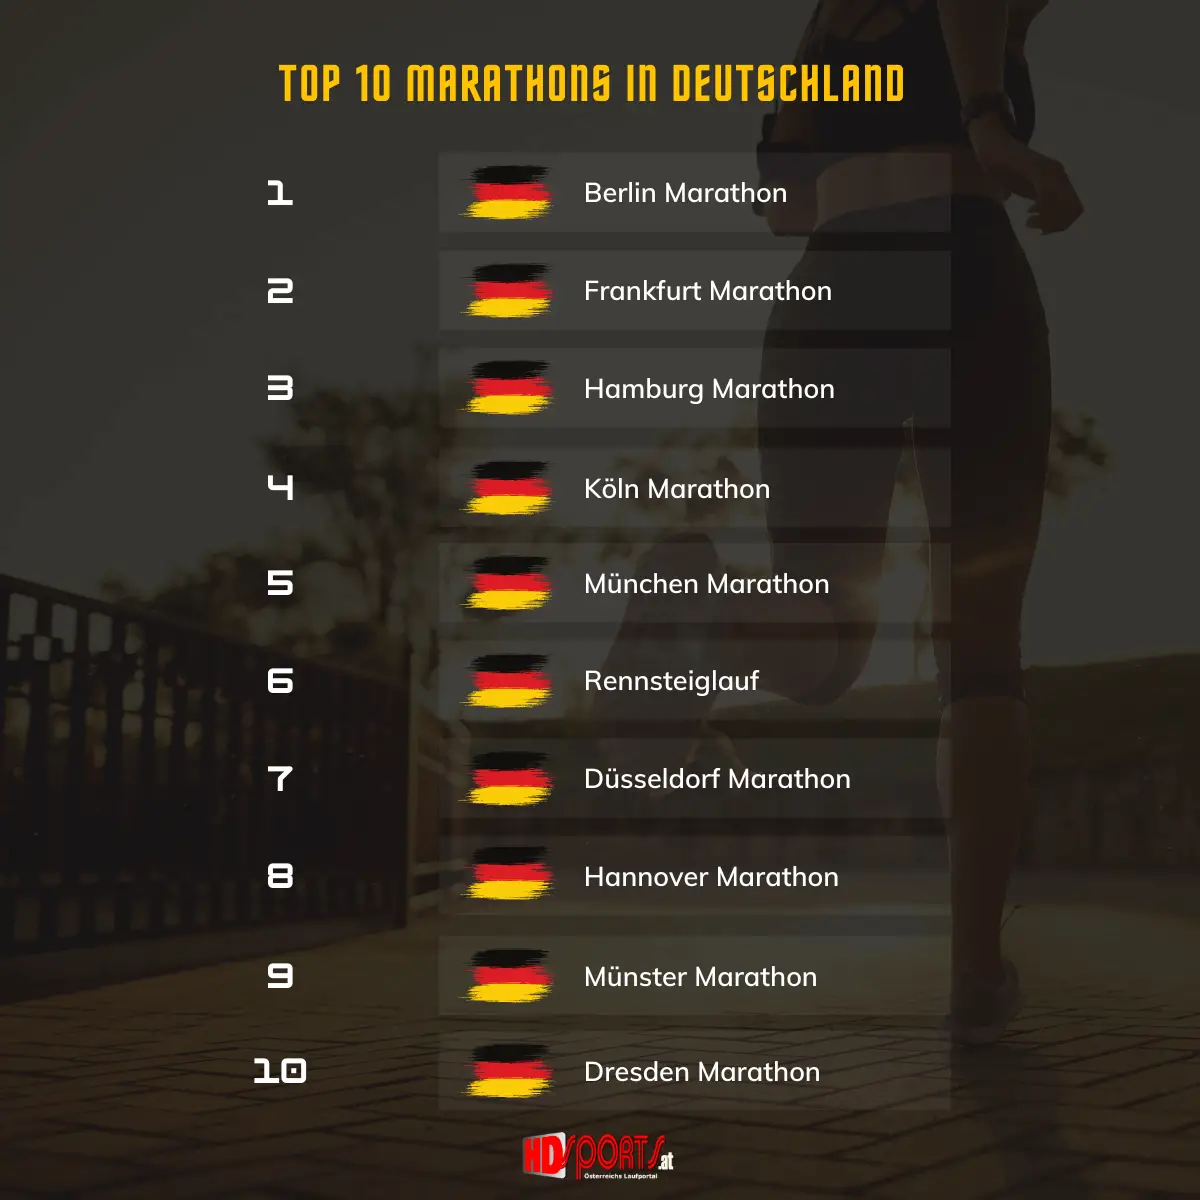 Die 10 größten Marathonläufe in Deutschlnad